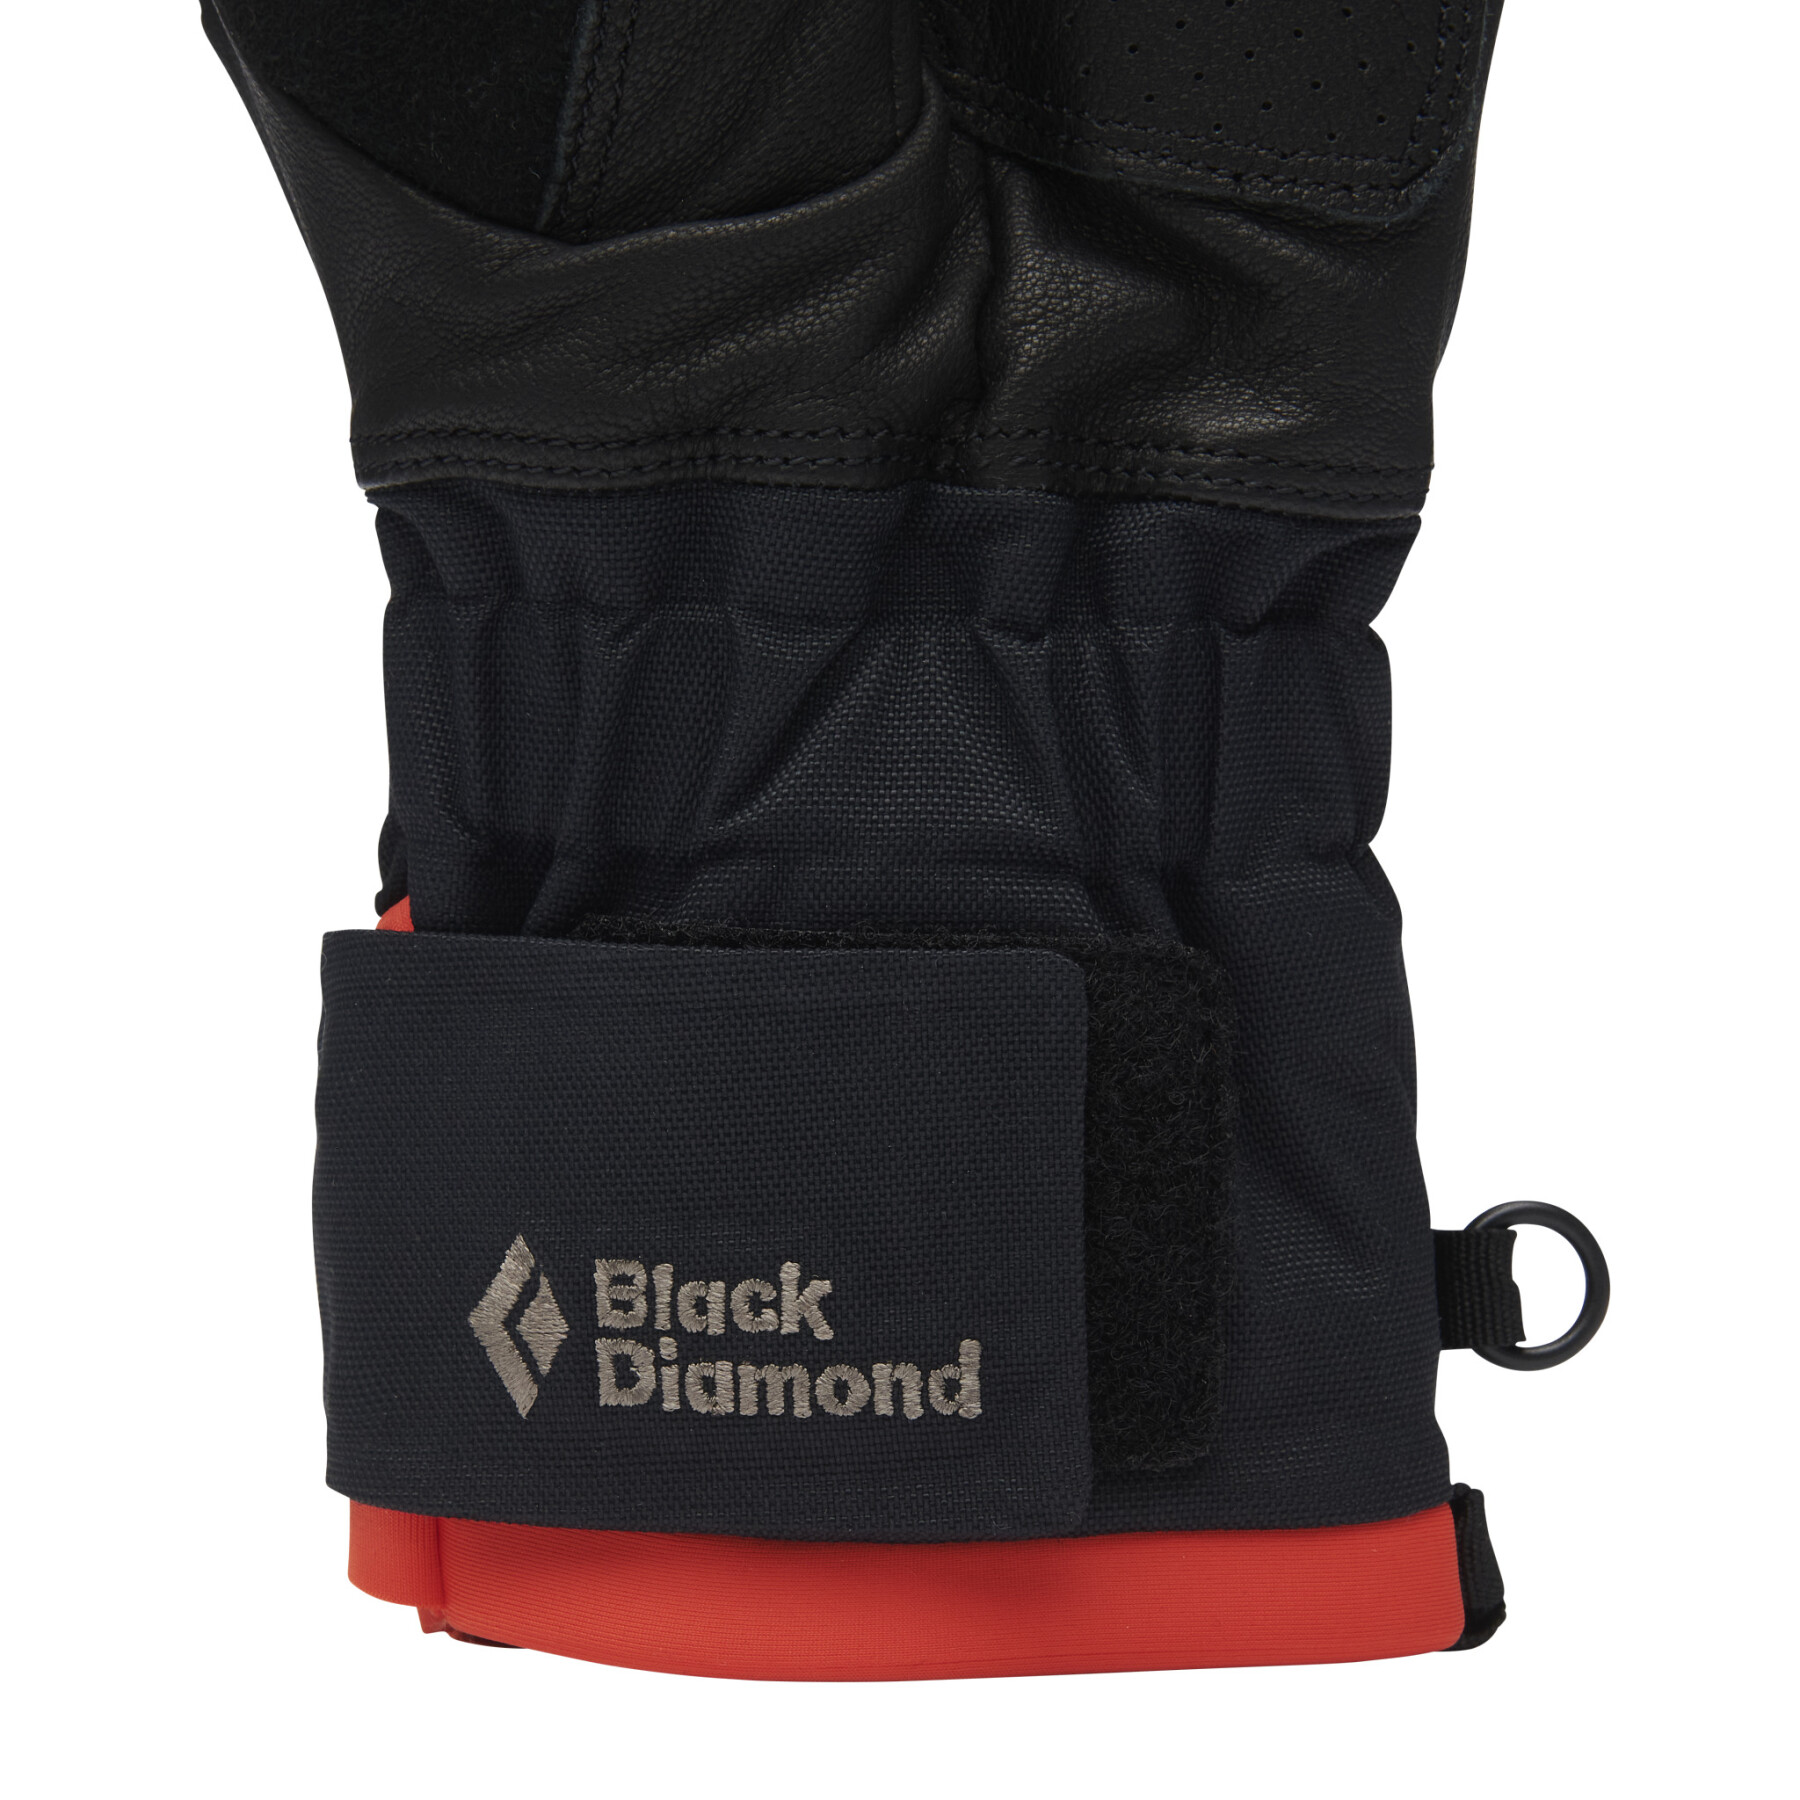 Kletterhandschuhe Black Diamond Impulse